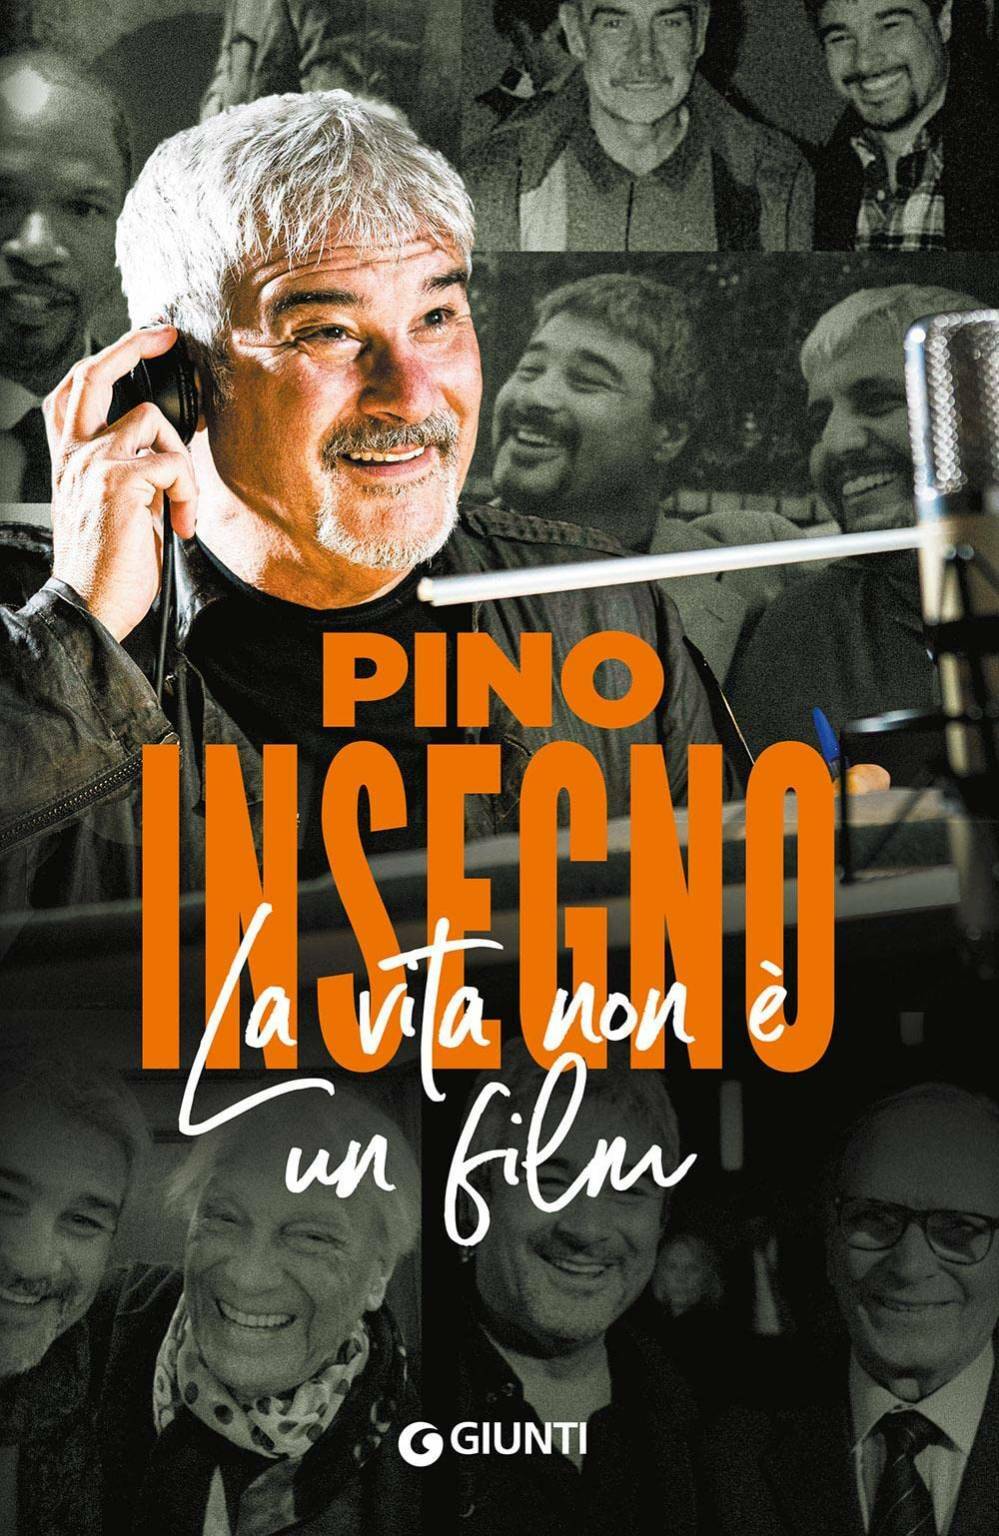 Pino Insegno